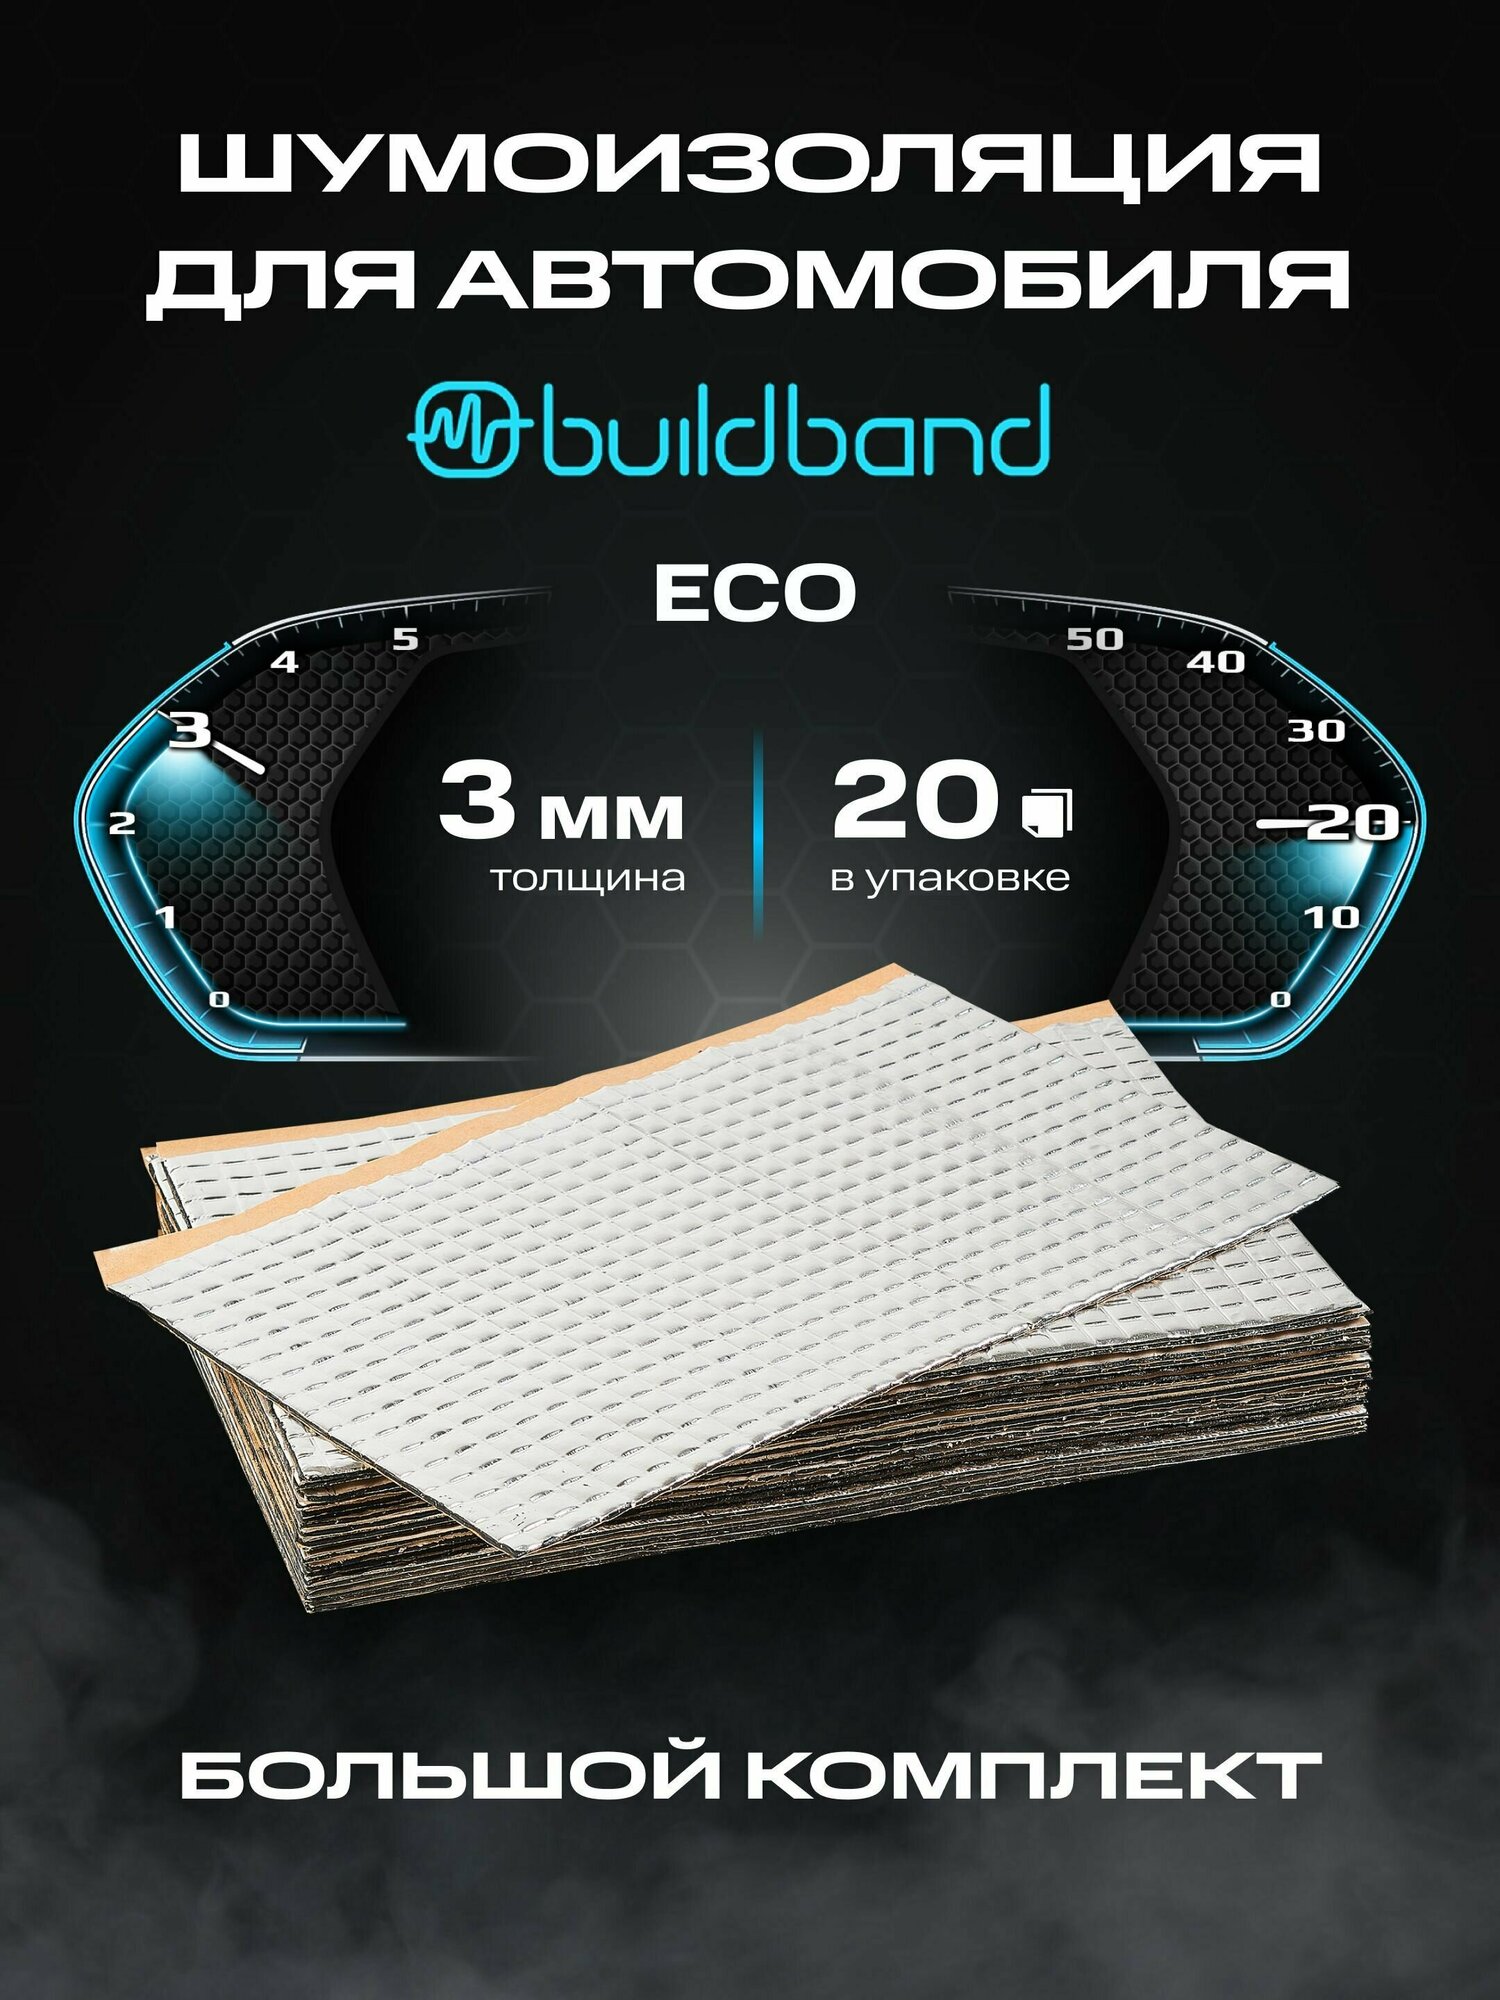 Шумоизоляция buildband ECO 3, комплект 20 листов/ Виброизоляция для автомобиля самоклеящаяся/Шумка звукоизоляция